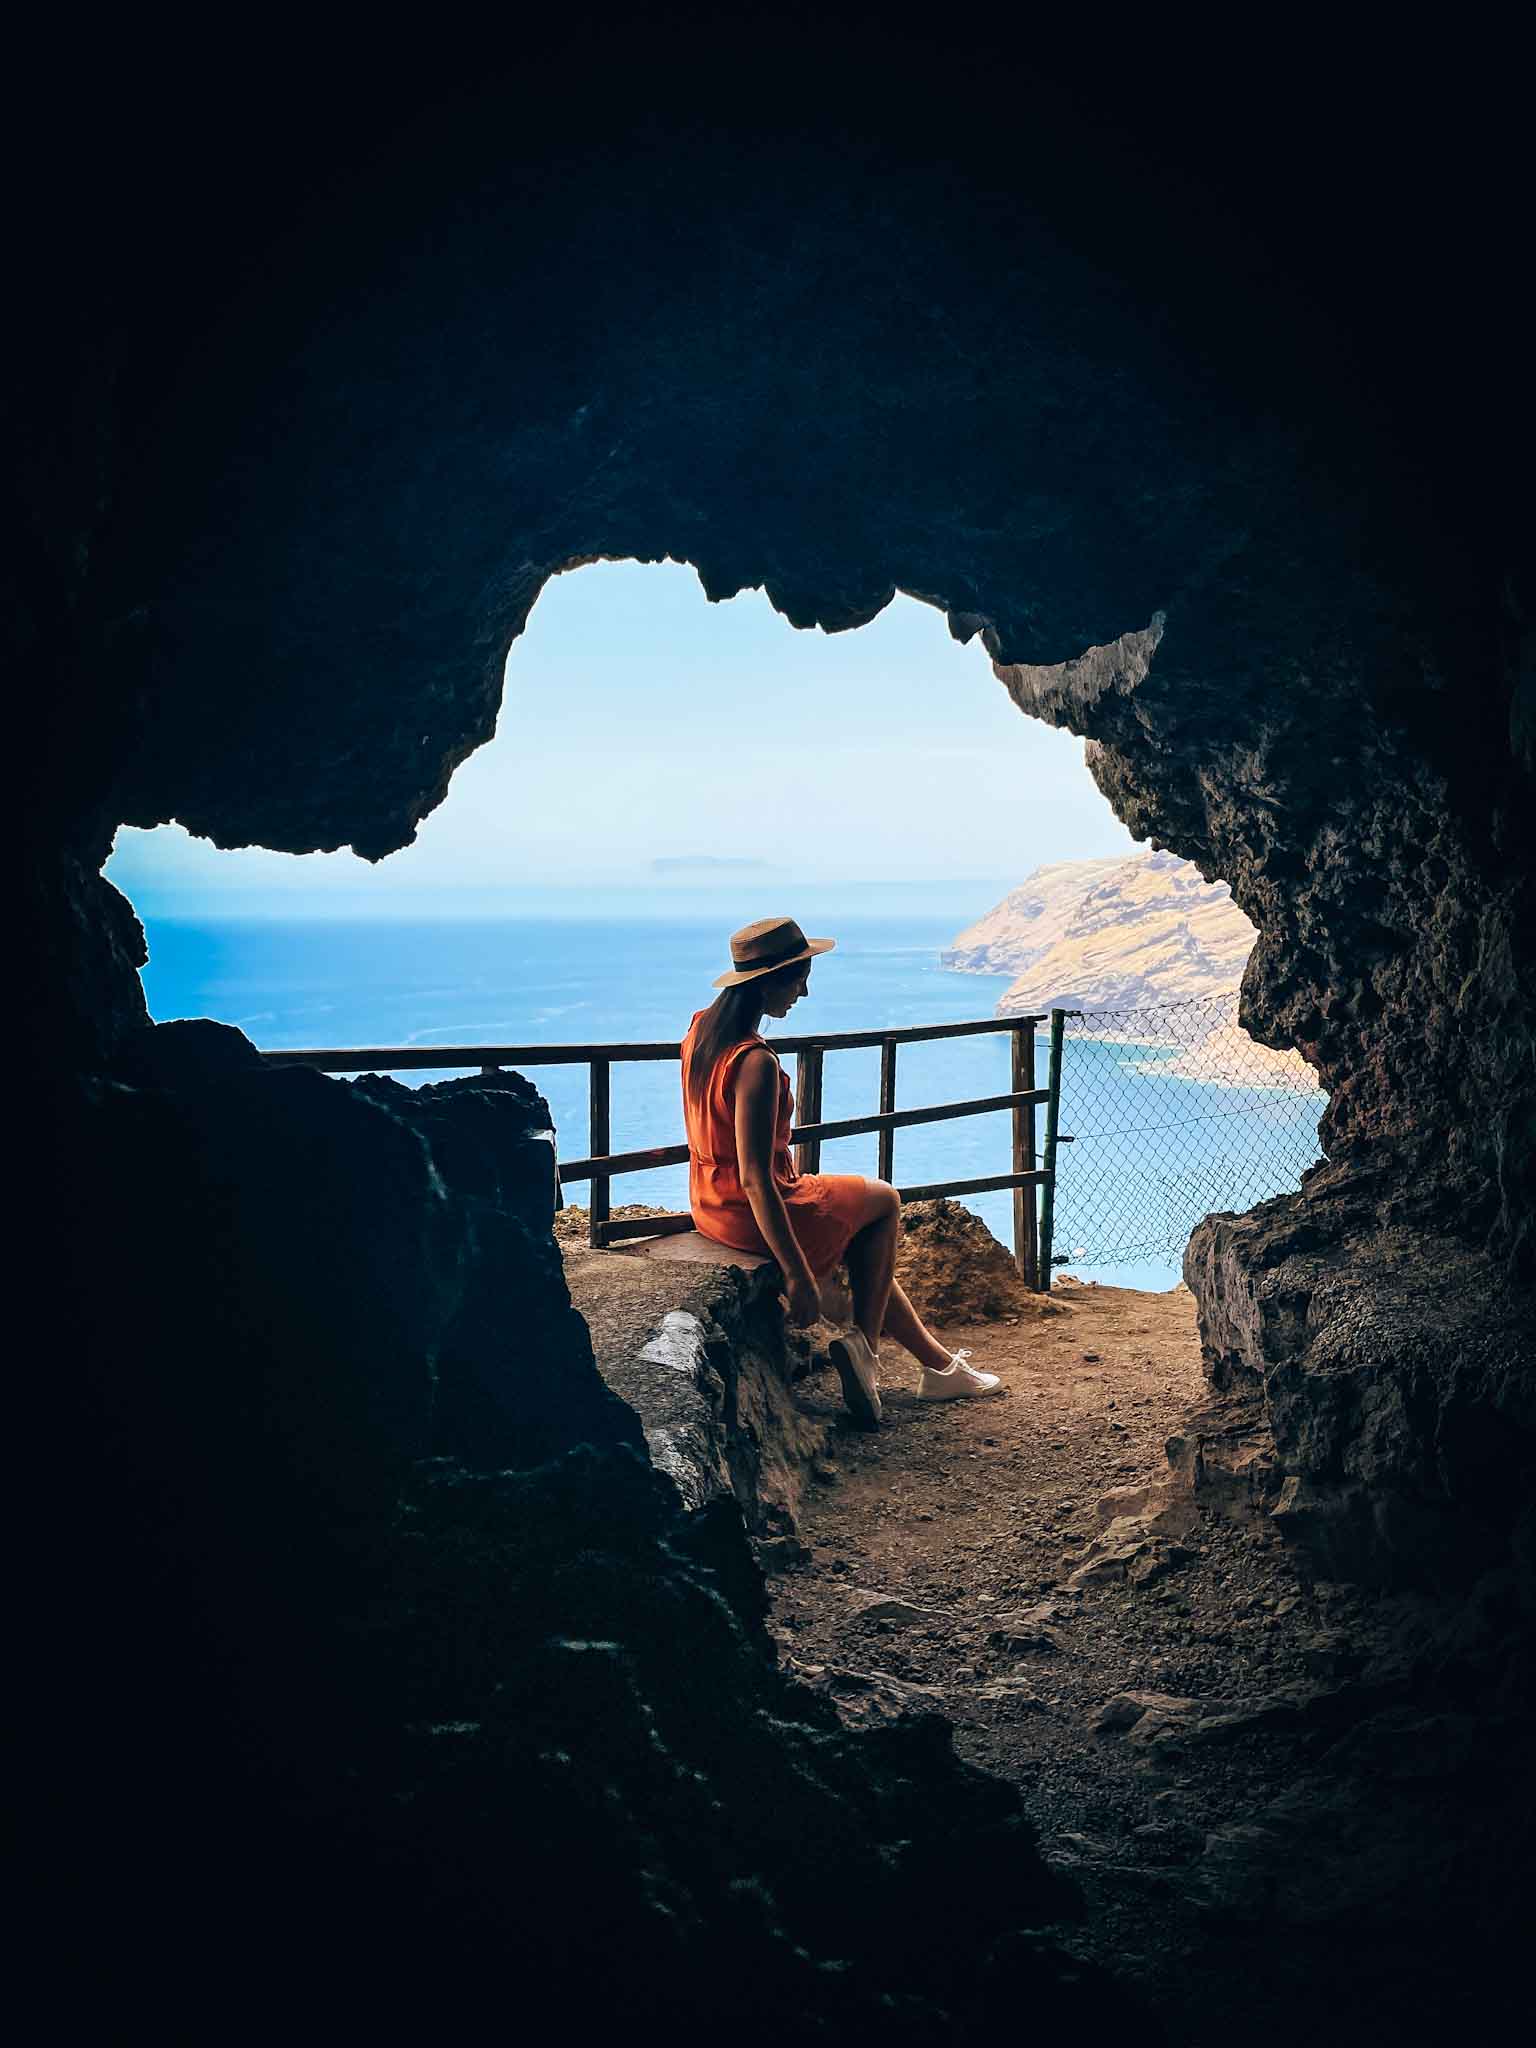 Best Instagram spots in La Palma Canary Islands - Tunnel to Playa de la Veta